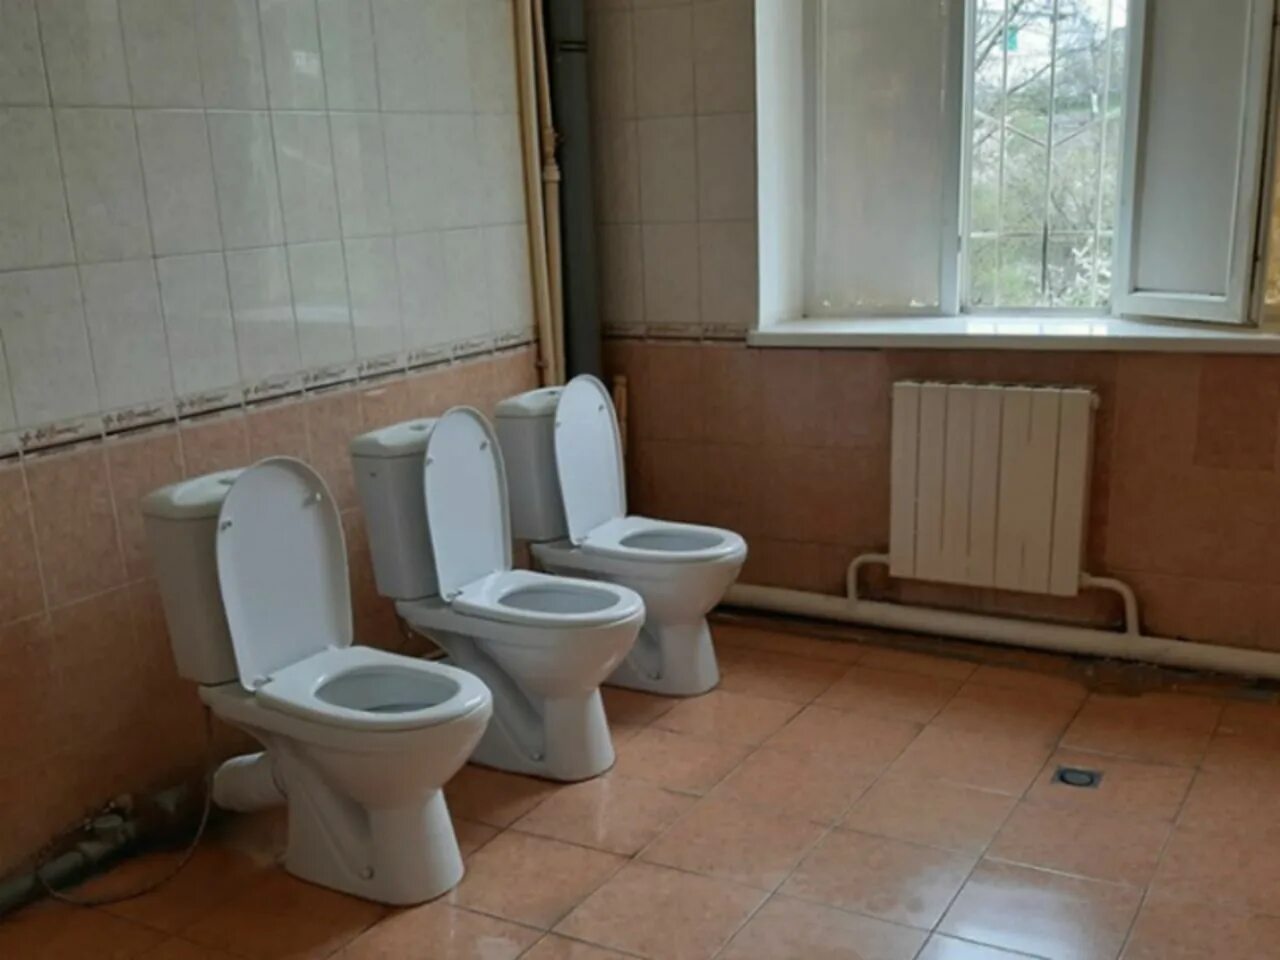 Унитаз в школе. Туалетная комната в школе. Унитазы в школьных учреждениях. Советские унитазы в школе. Мужской туалет в школе